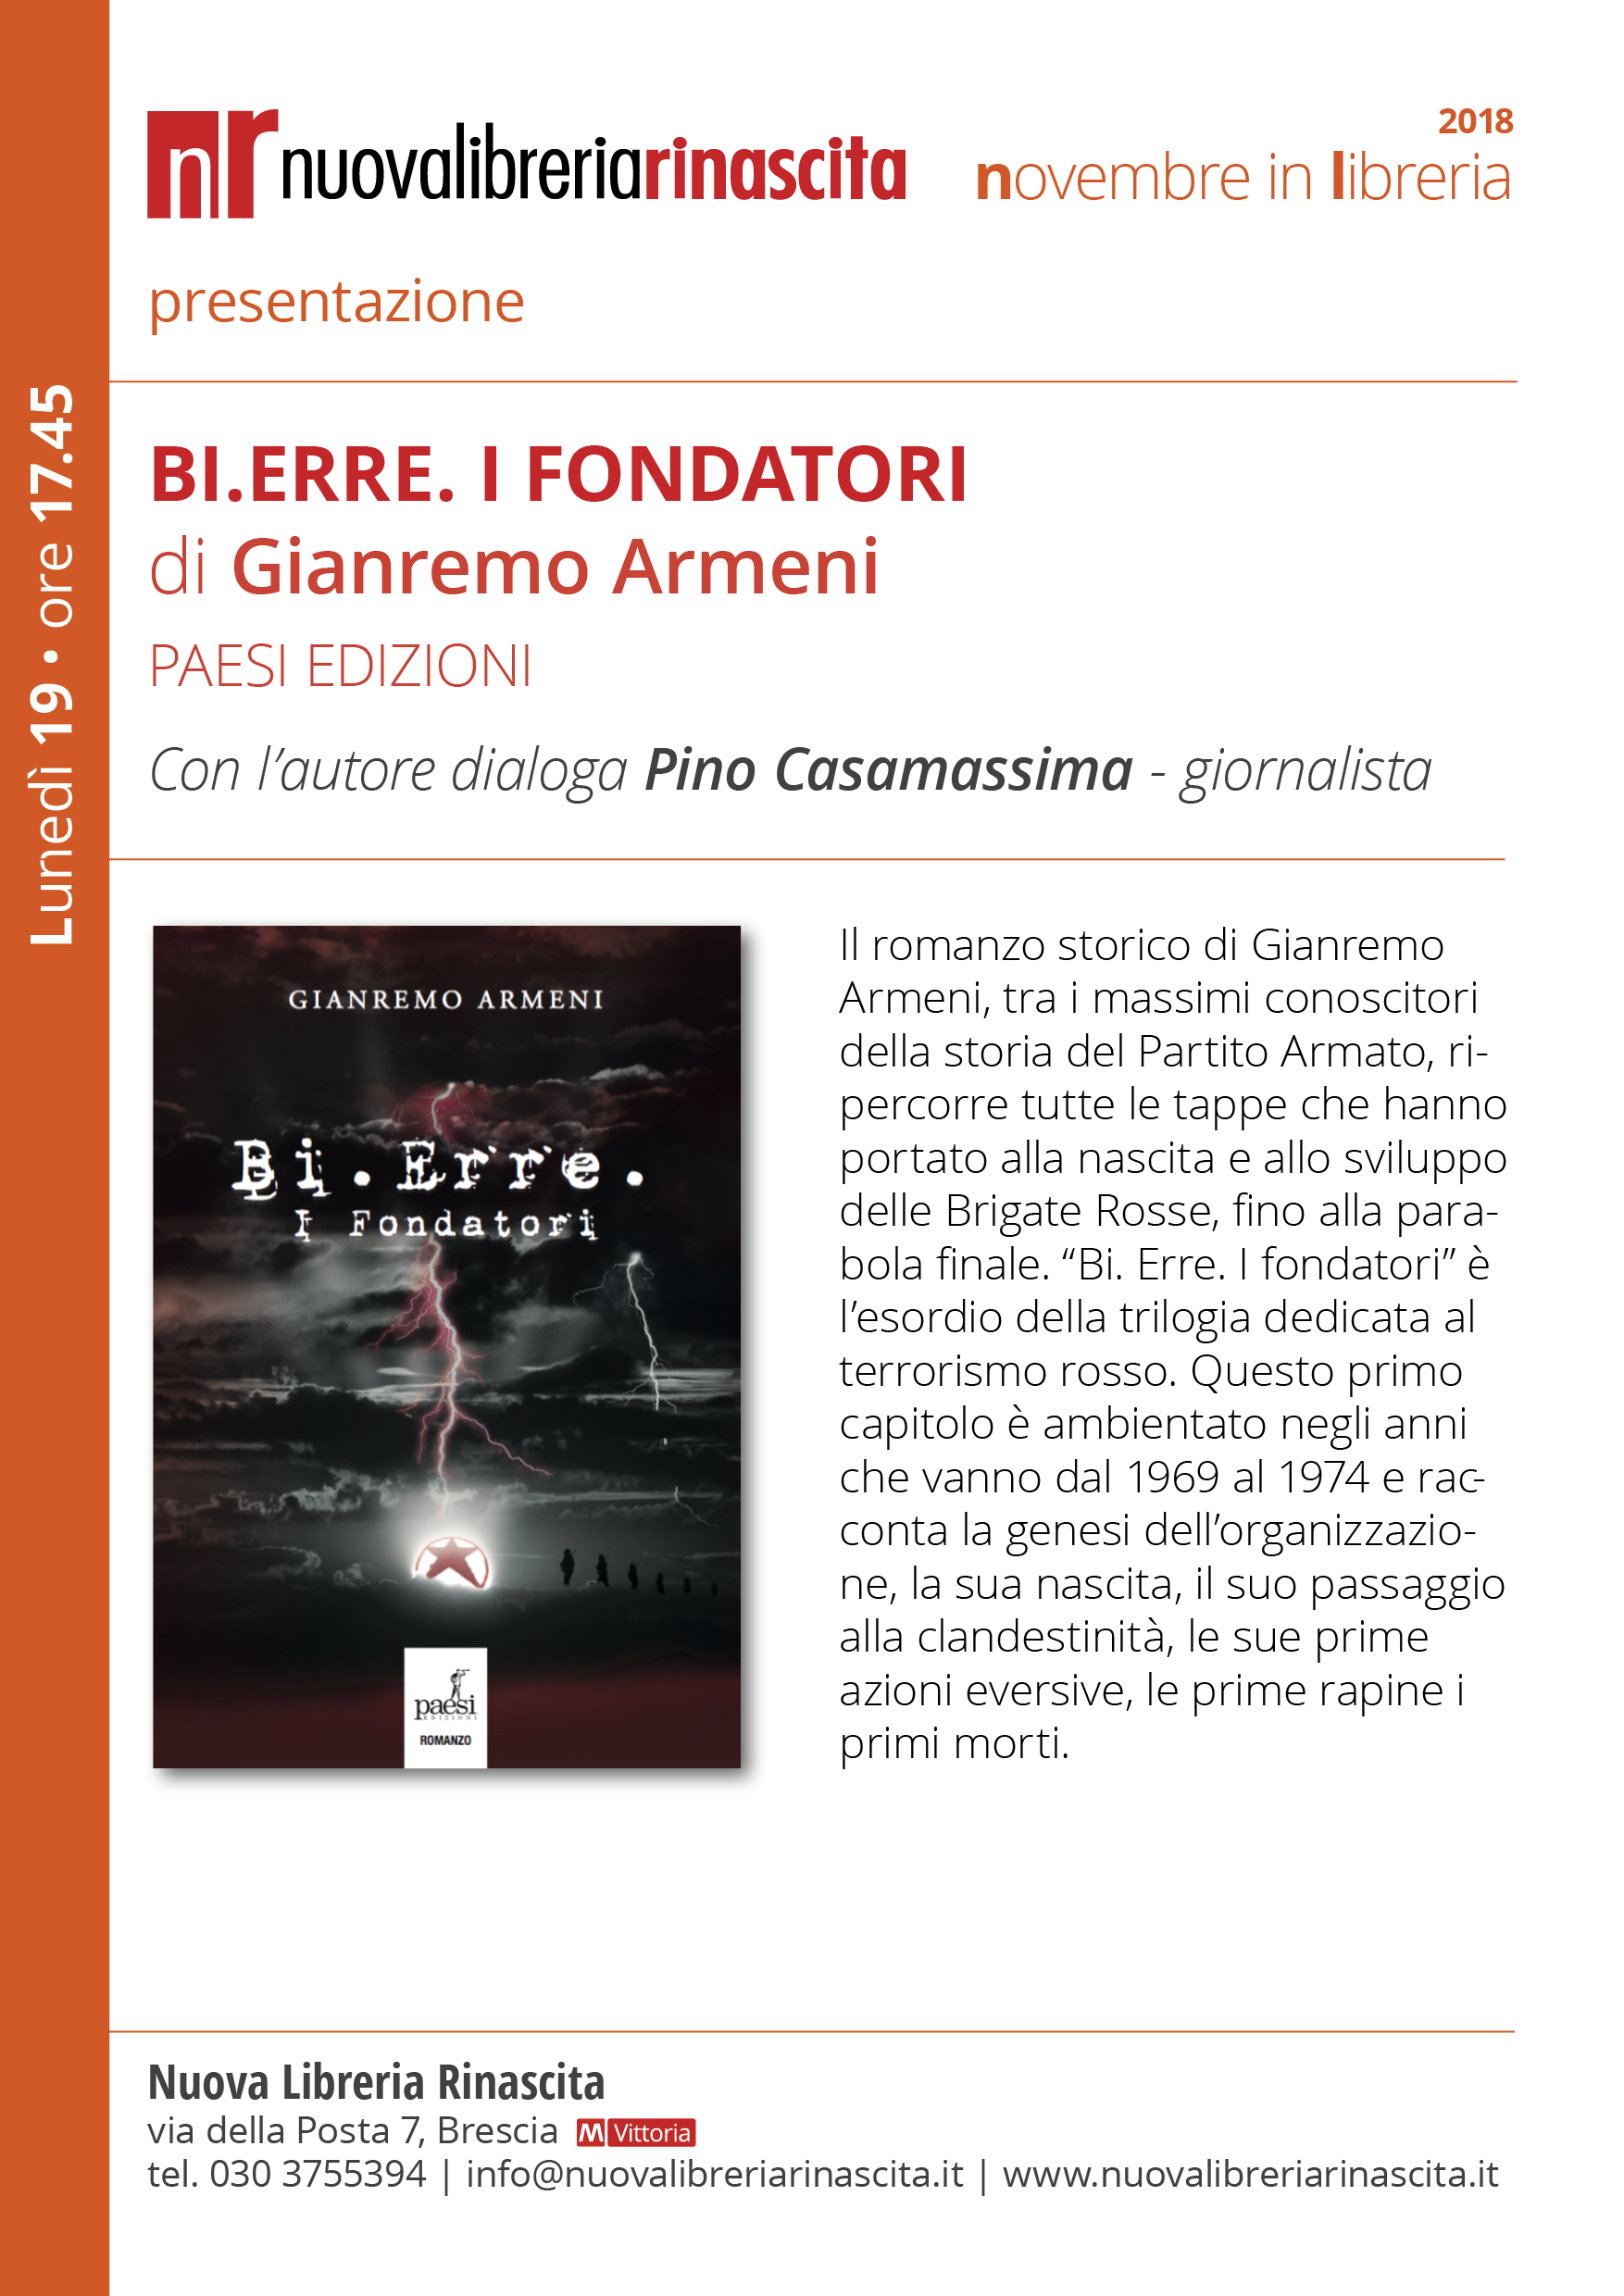  ‘Bi. Erre. – I Fondatori’, la presentazione del libro il 19 novembre a Brescia